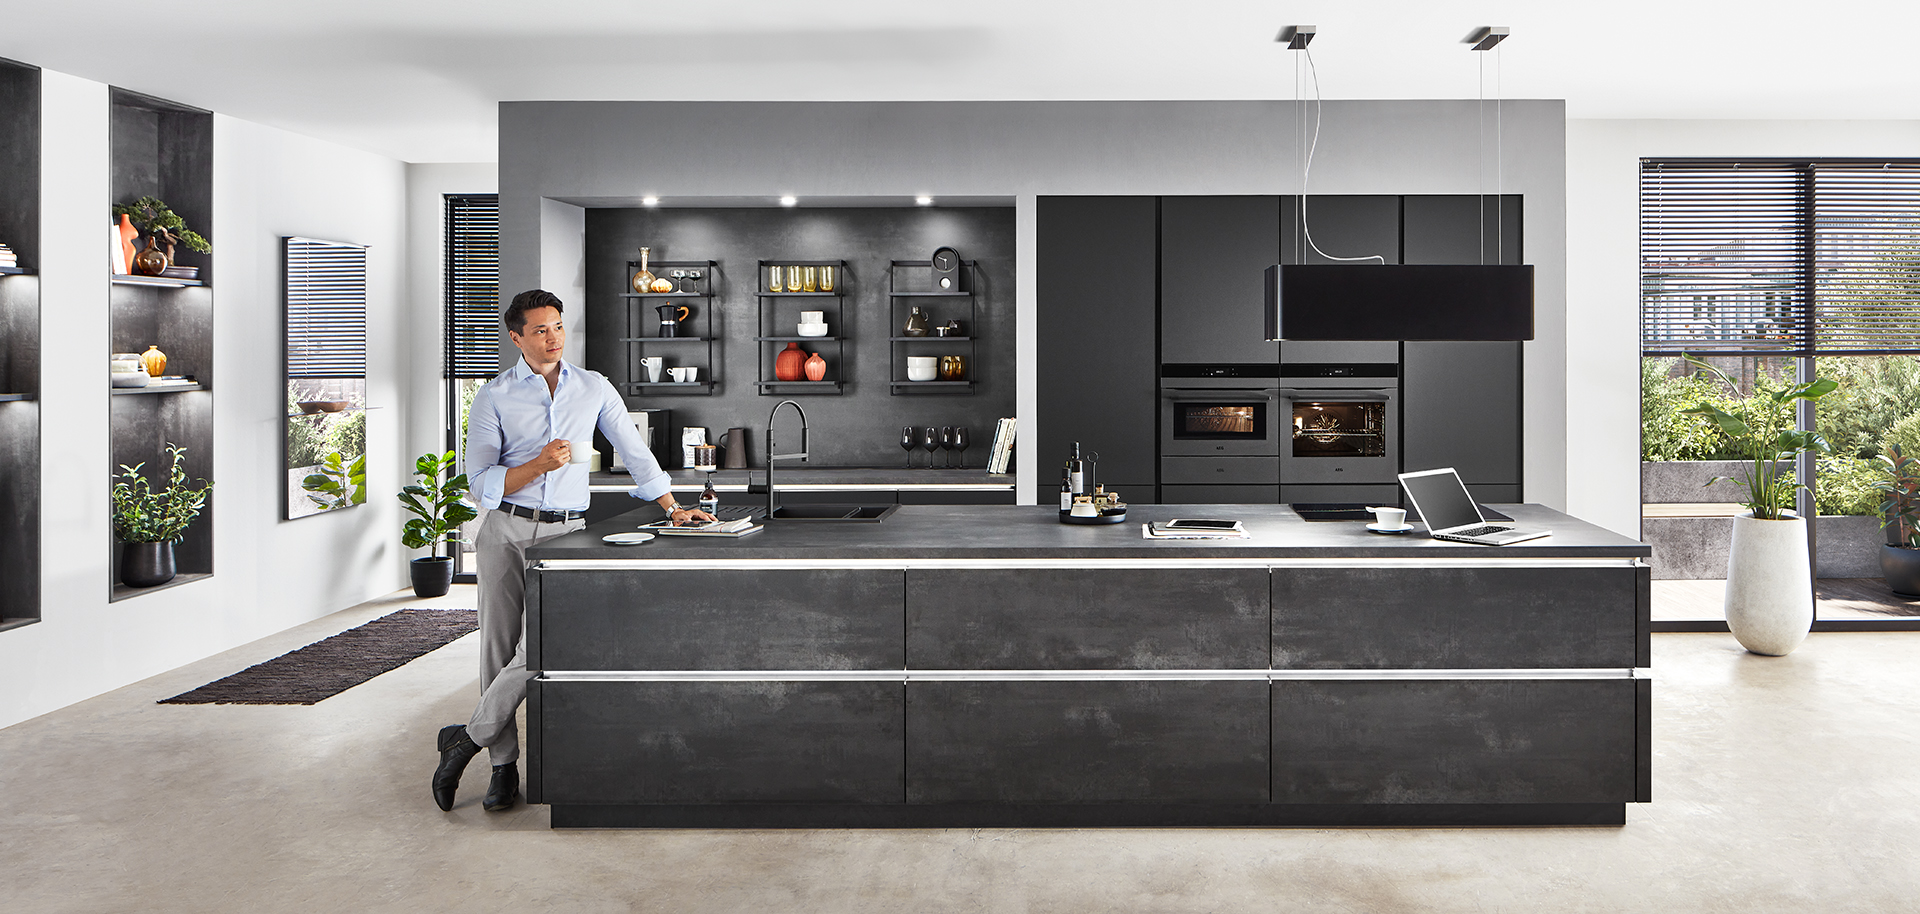 Interni di cucina moderna con un design elegante con mobili neri, elettrodomestici integrati e una persona che prepara il cibo sul piano dell'isola.